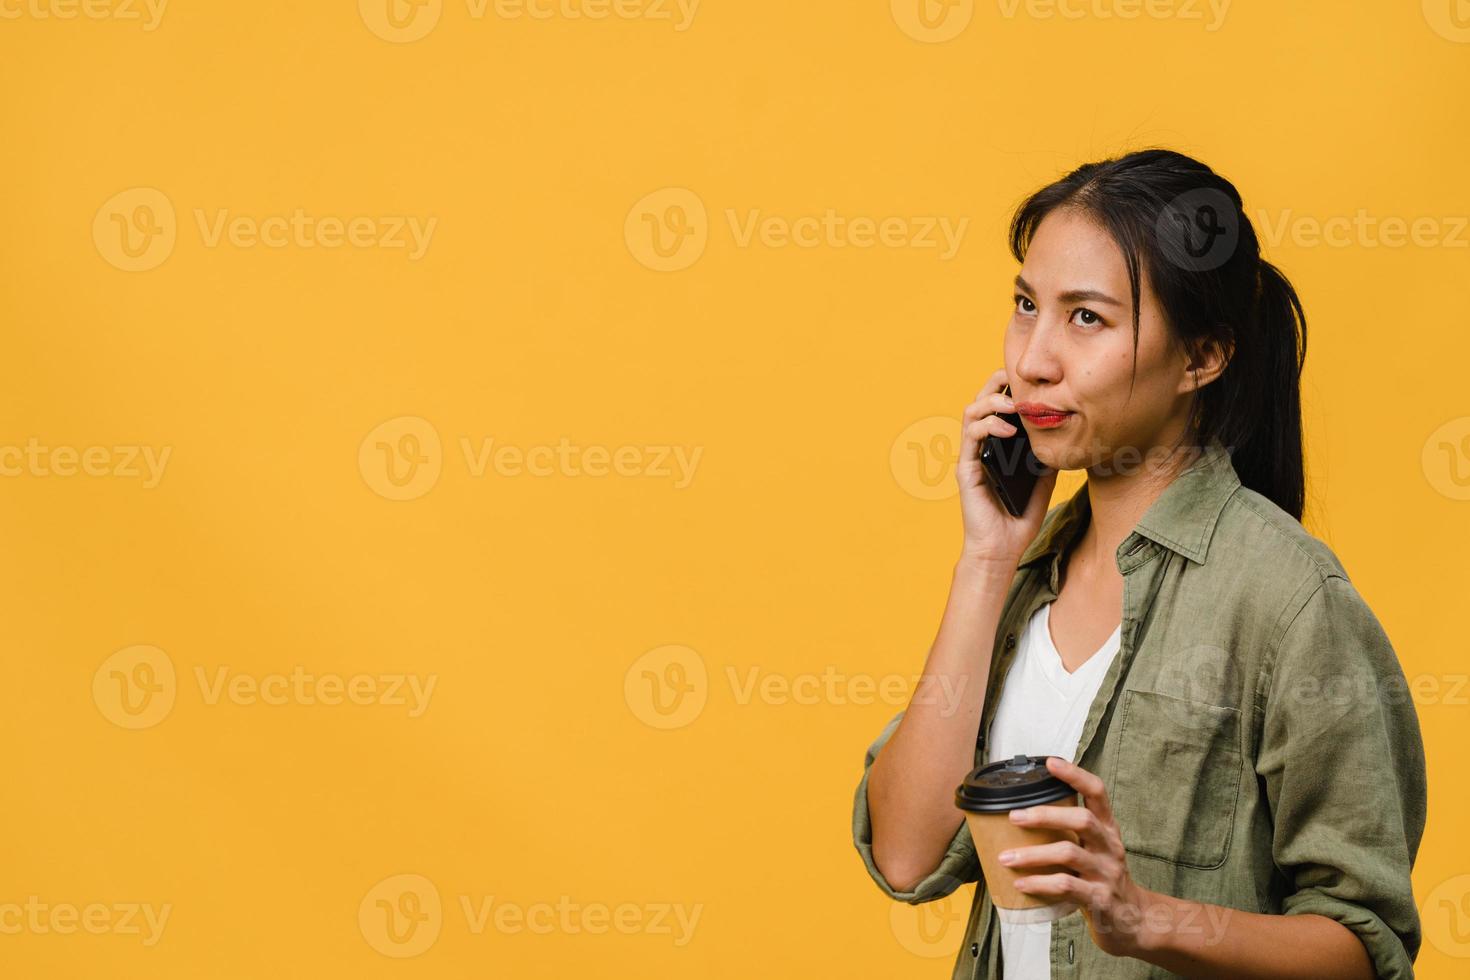 une jeune femme asiatique parle par téléphone et tient une tasse de café avec une expression négative, des cris excités, pleure émotionnellement en colère dans un tissu décontracté et se tient isolée sur fond jaune. concept d'expression faciale. photo